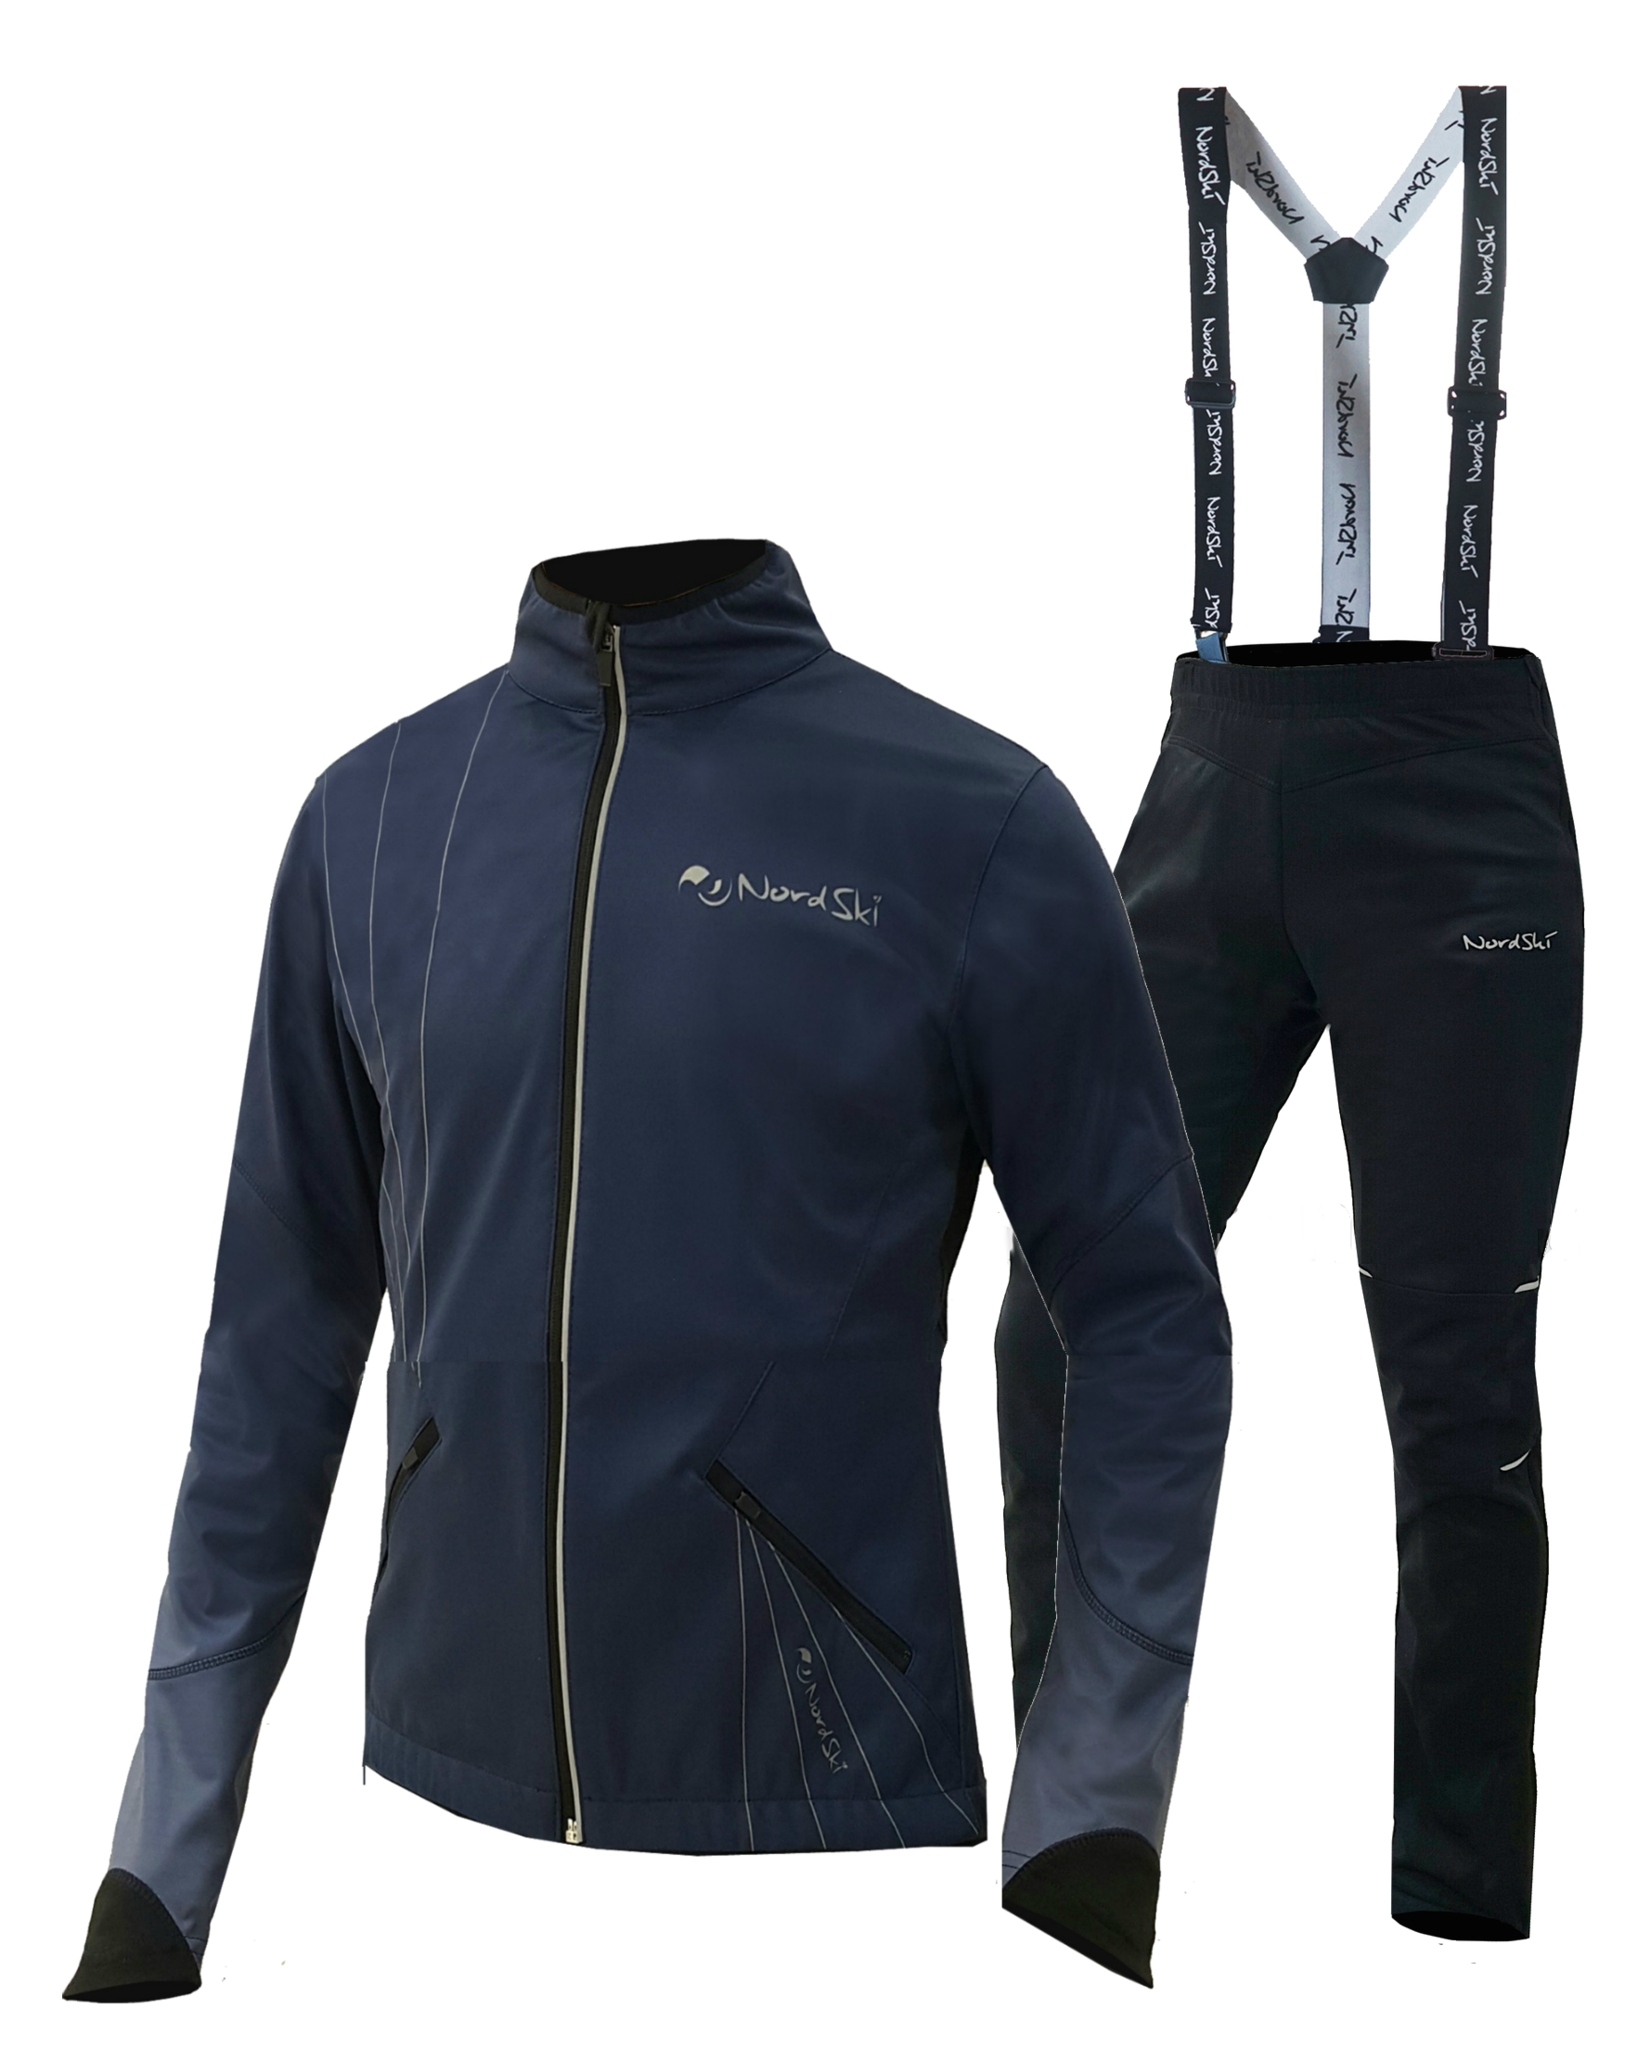 Разминочный костюм Nordski Premium. Nordski Premium мужской разминочный лыжный костюм Navy. Лыжный разминочный костюм adidas. Rukka лыжный костюм разминочный. Разминочный костюм лыжи